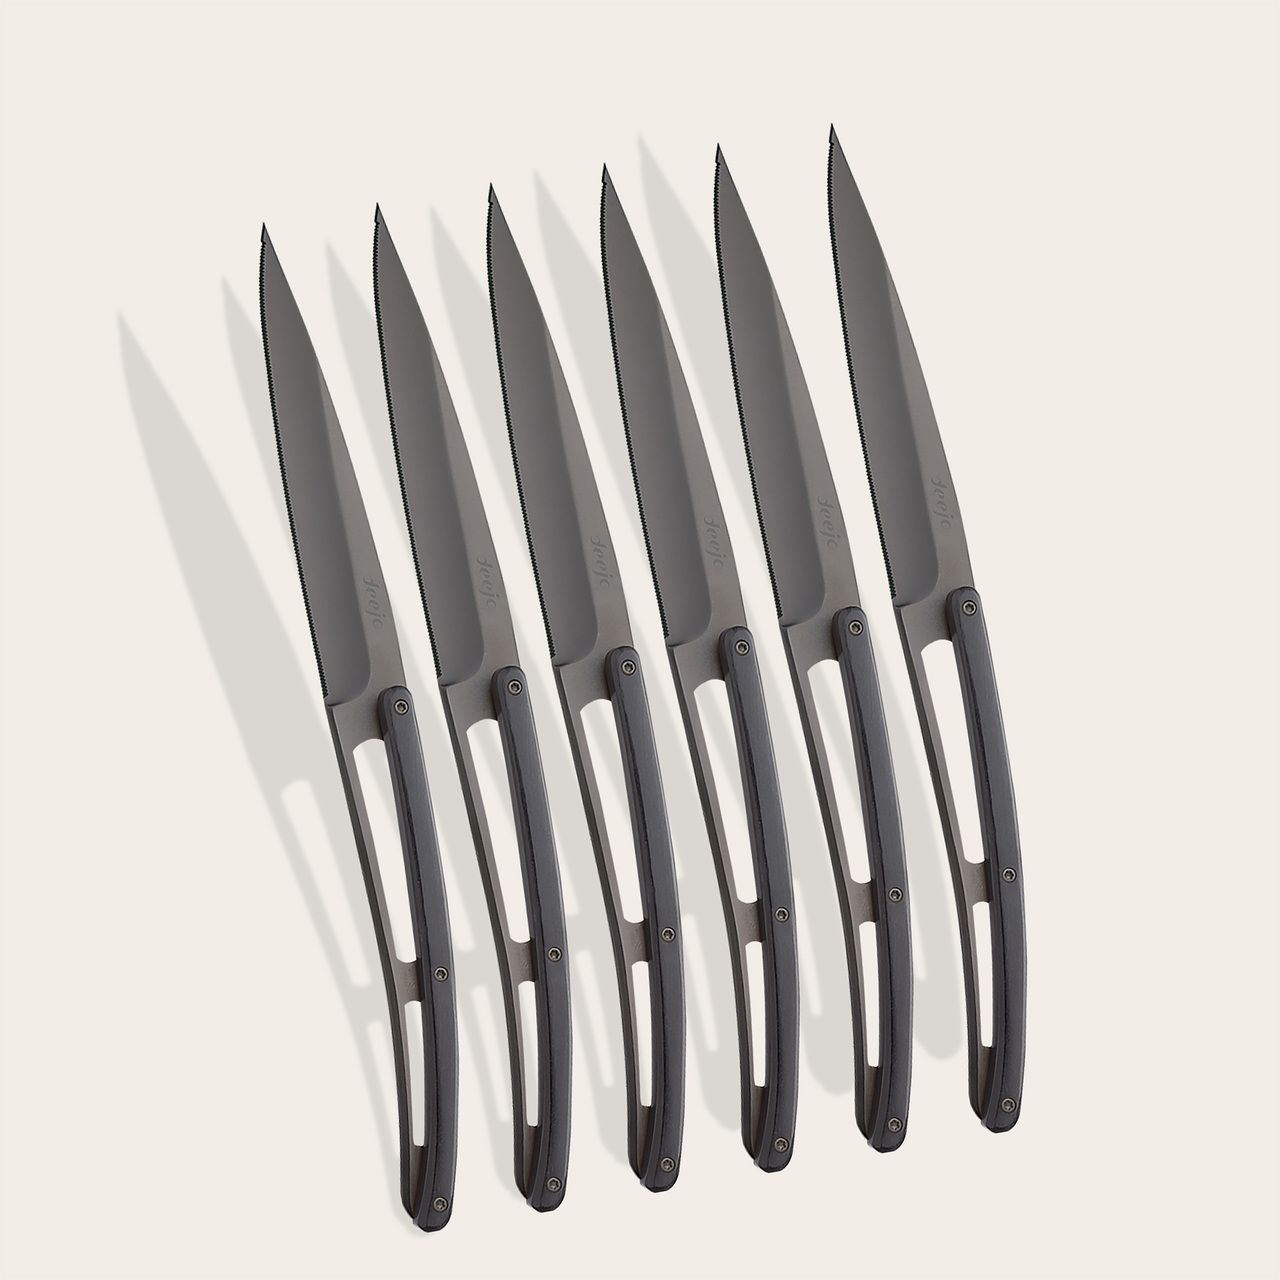 https://www.deejo.com/medias/produits/3233819434/22480_1280-6-deejo-steak-knives-serrated-ebony-wood.jpg